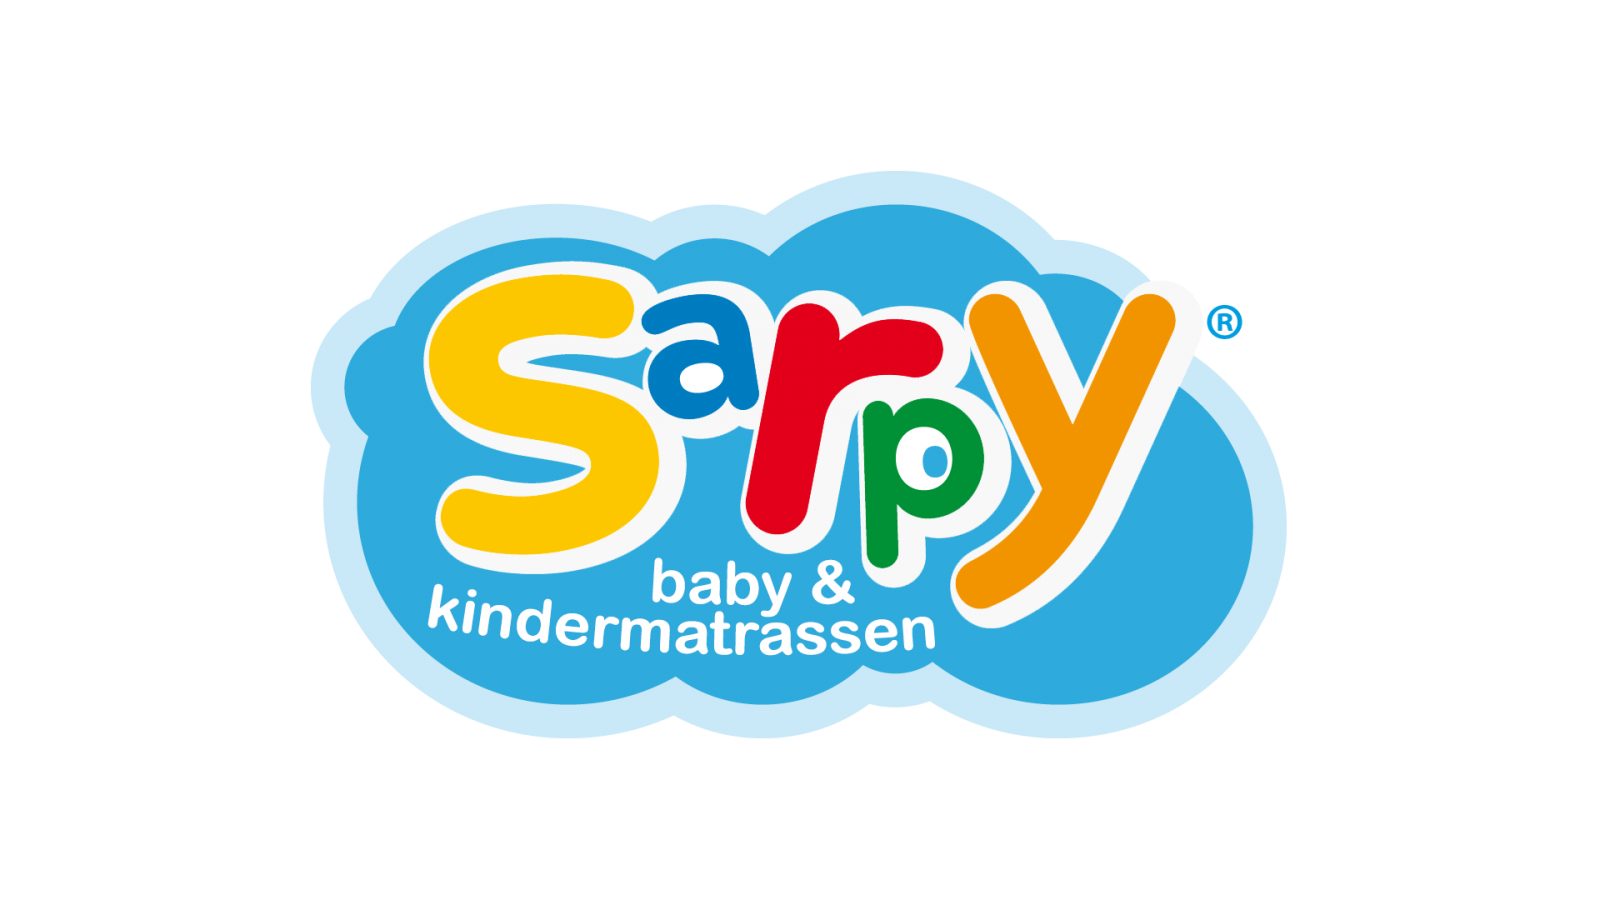 Sarpy baby en kindermatrassen